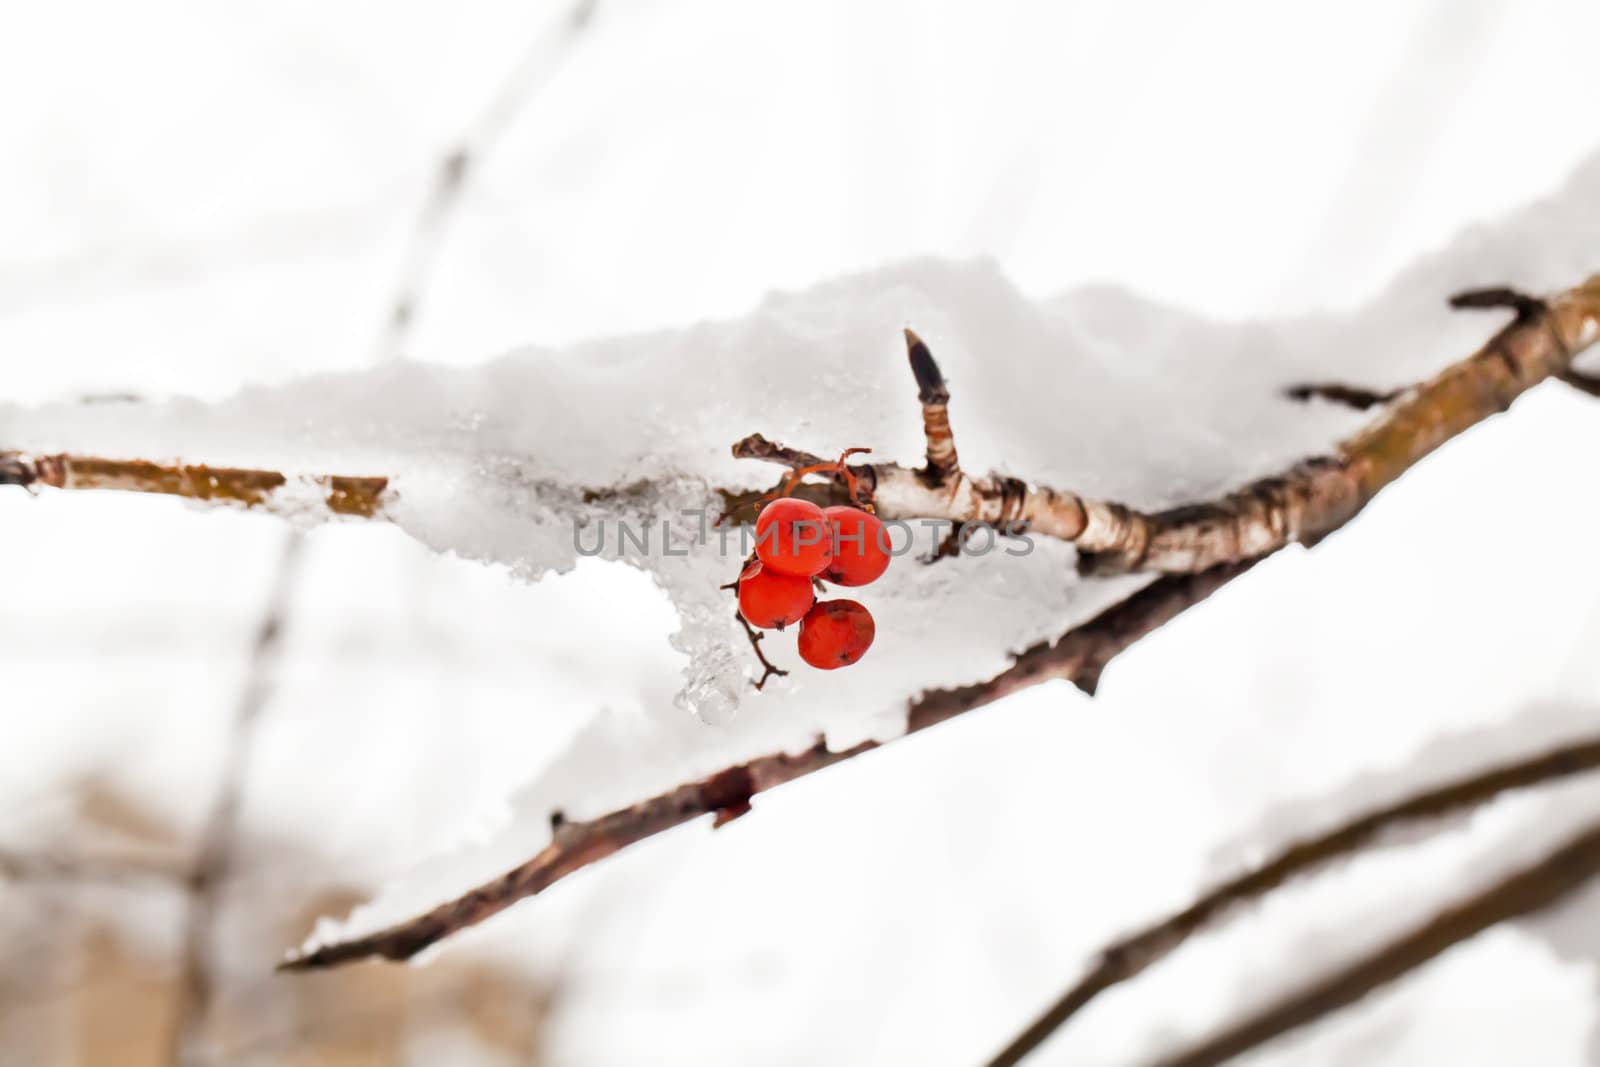 Red berries of rowan tree under snow by RawGroup